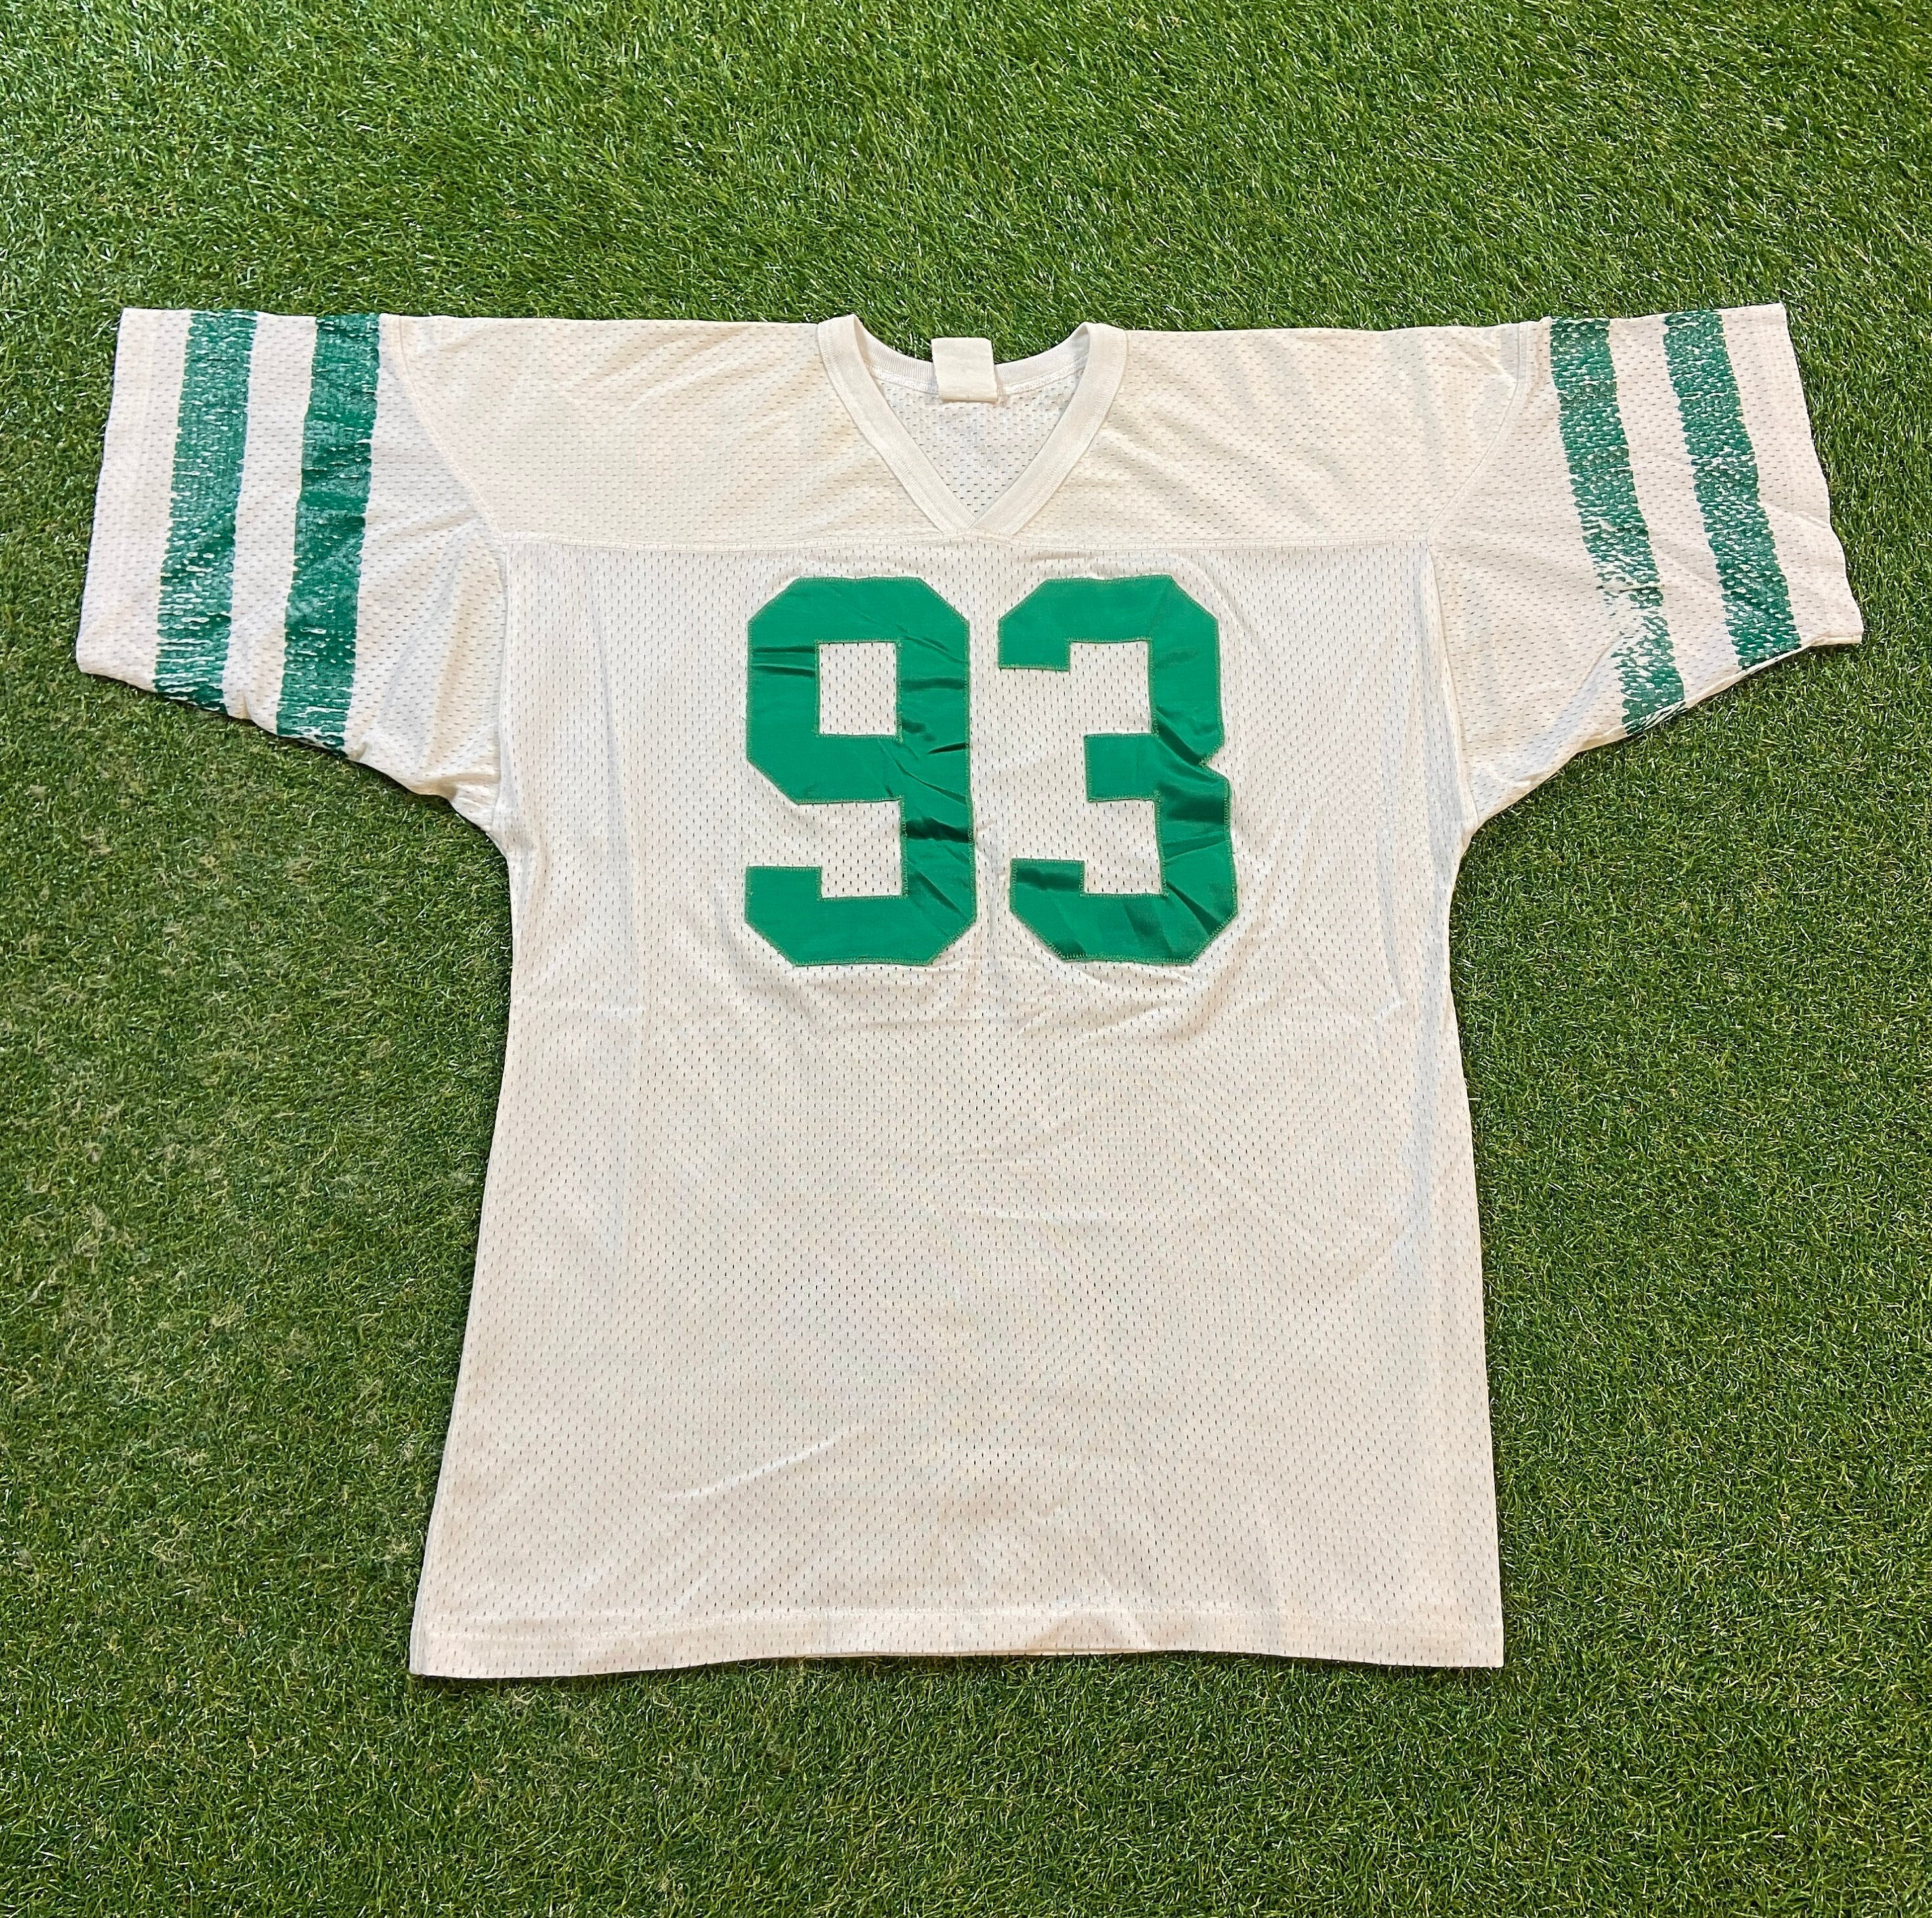 Vintage Champion NFL New York Jets 88 Jersey 1980s Size Large Made USA